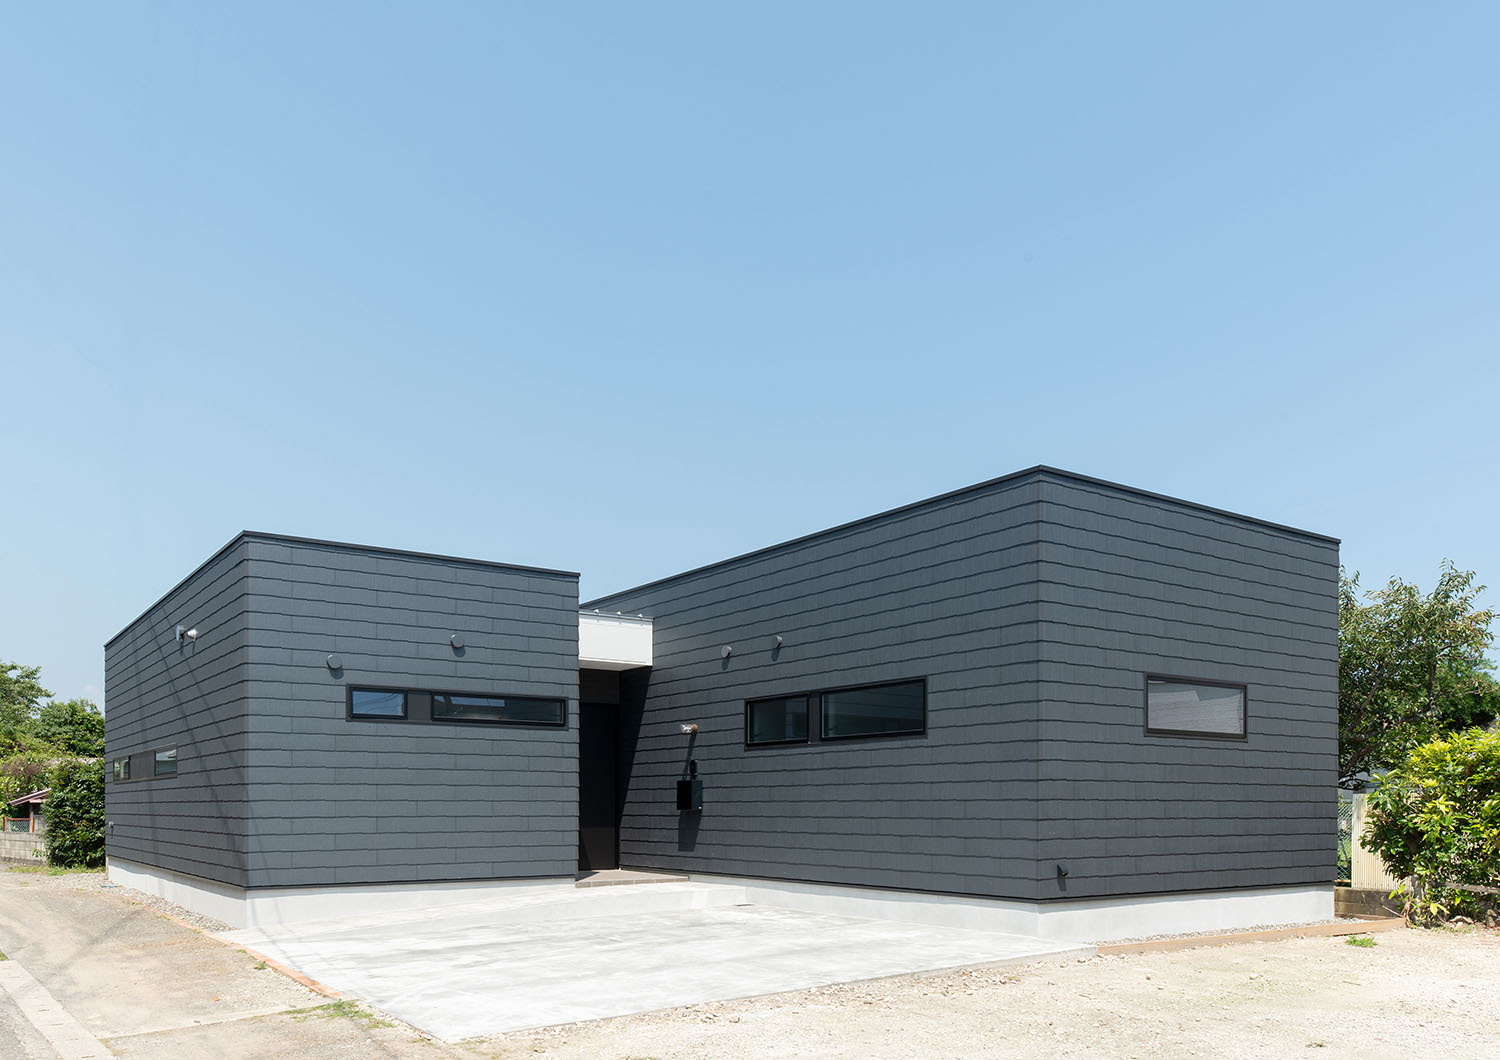 黒いキューブ状が二つ繋がったような外観の住宅・デザイン住宅